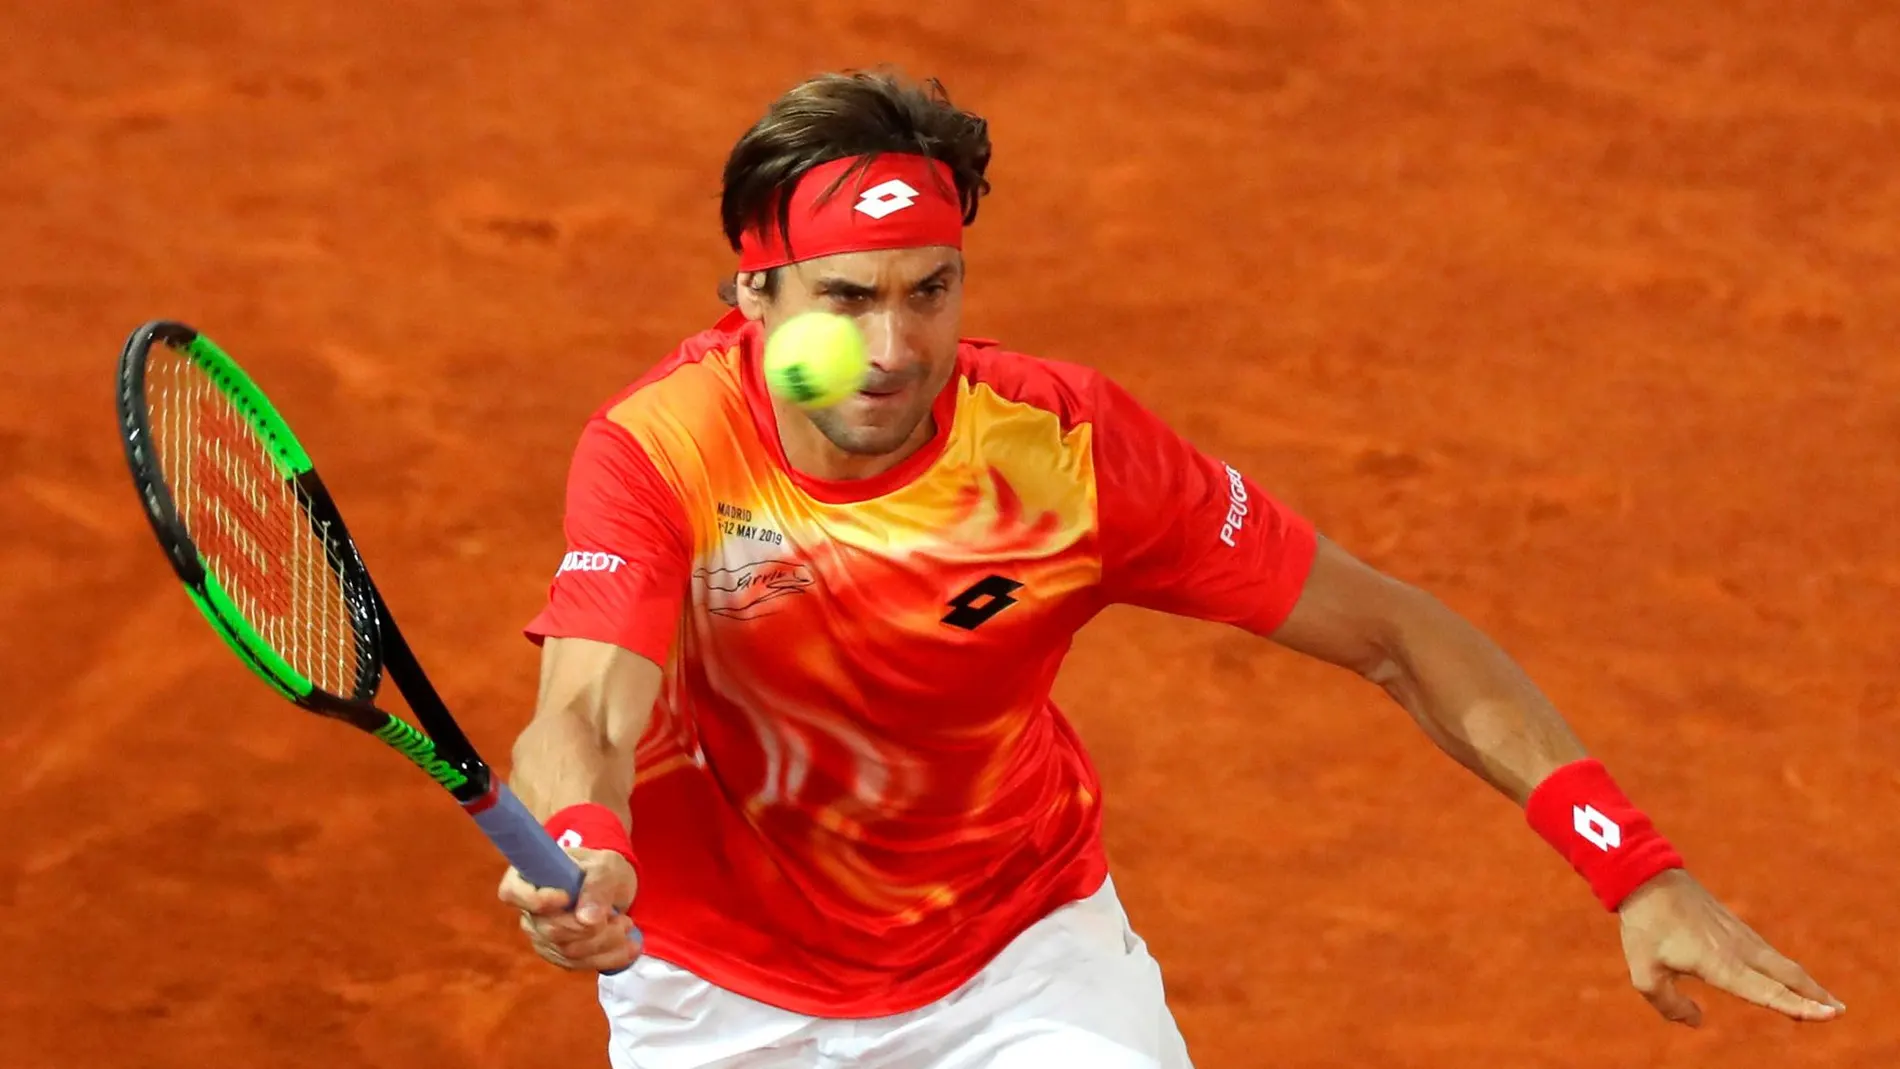 El tenista David Ferrer durante el partido de treintaidosavos de final del Mutua Madrid Open